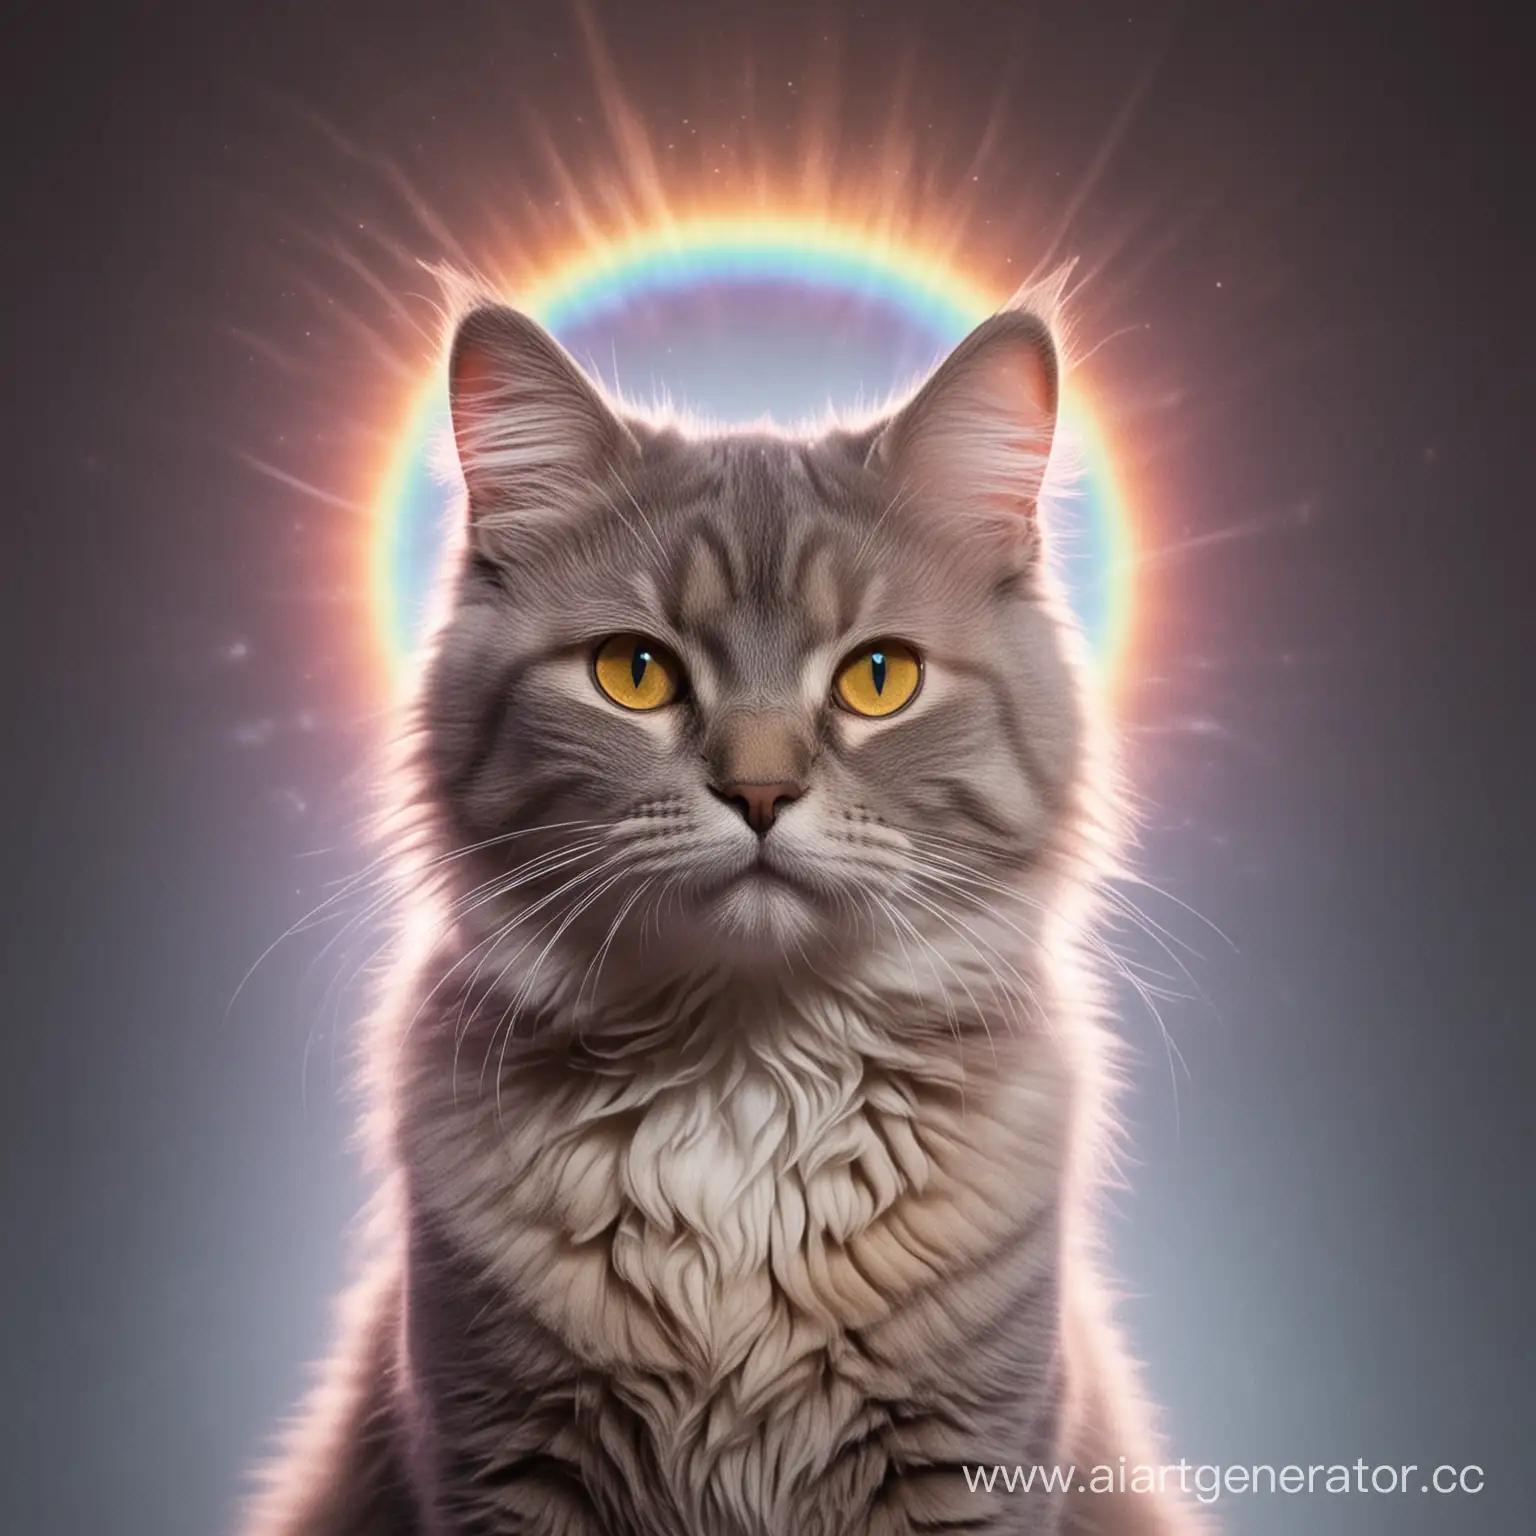 Cat with aura